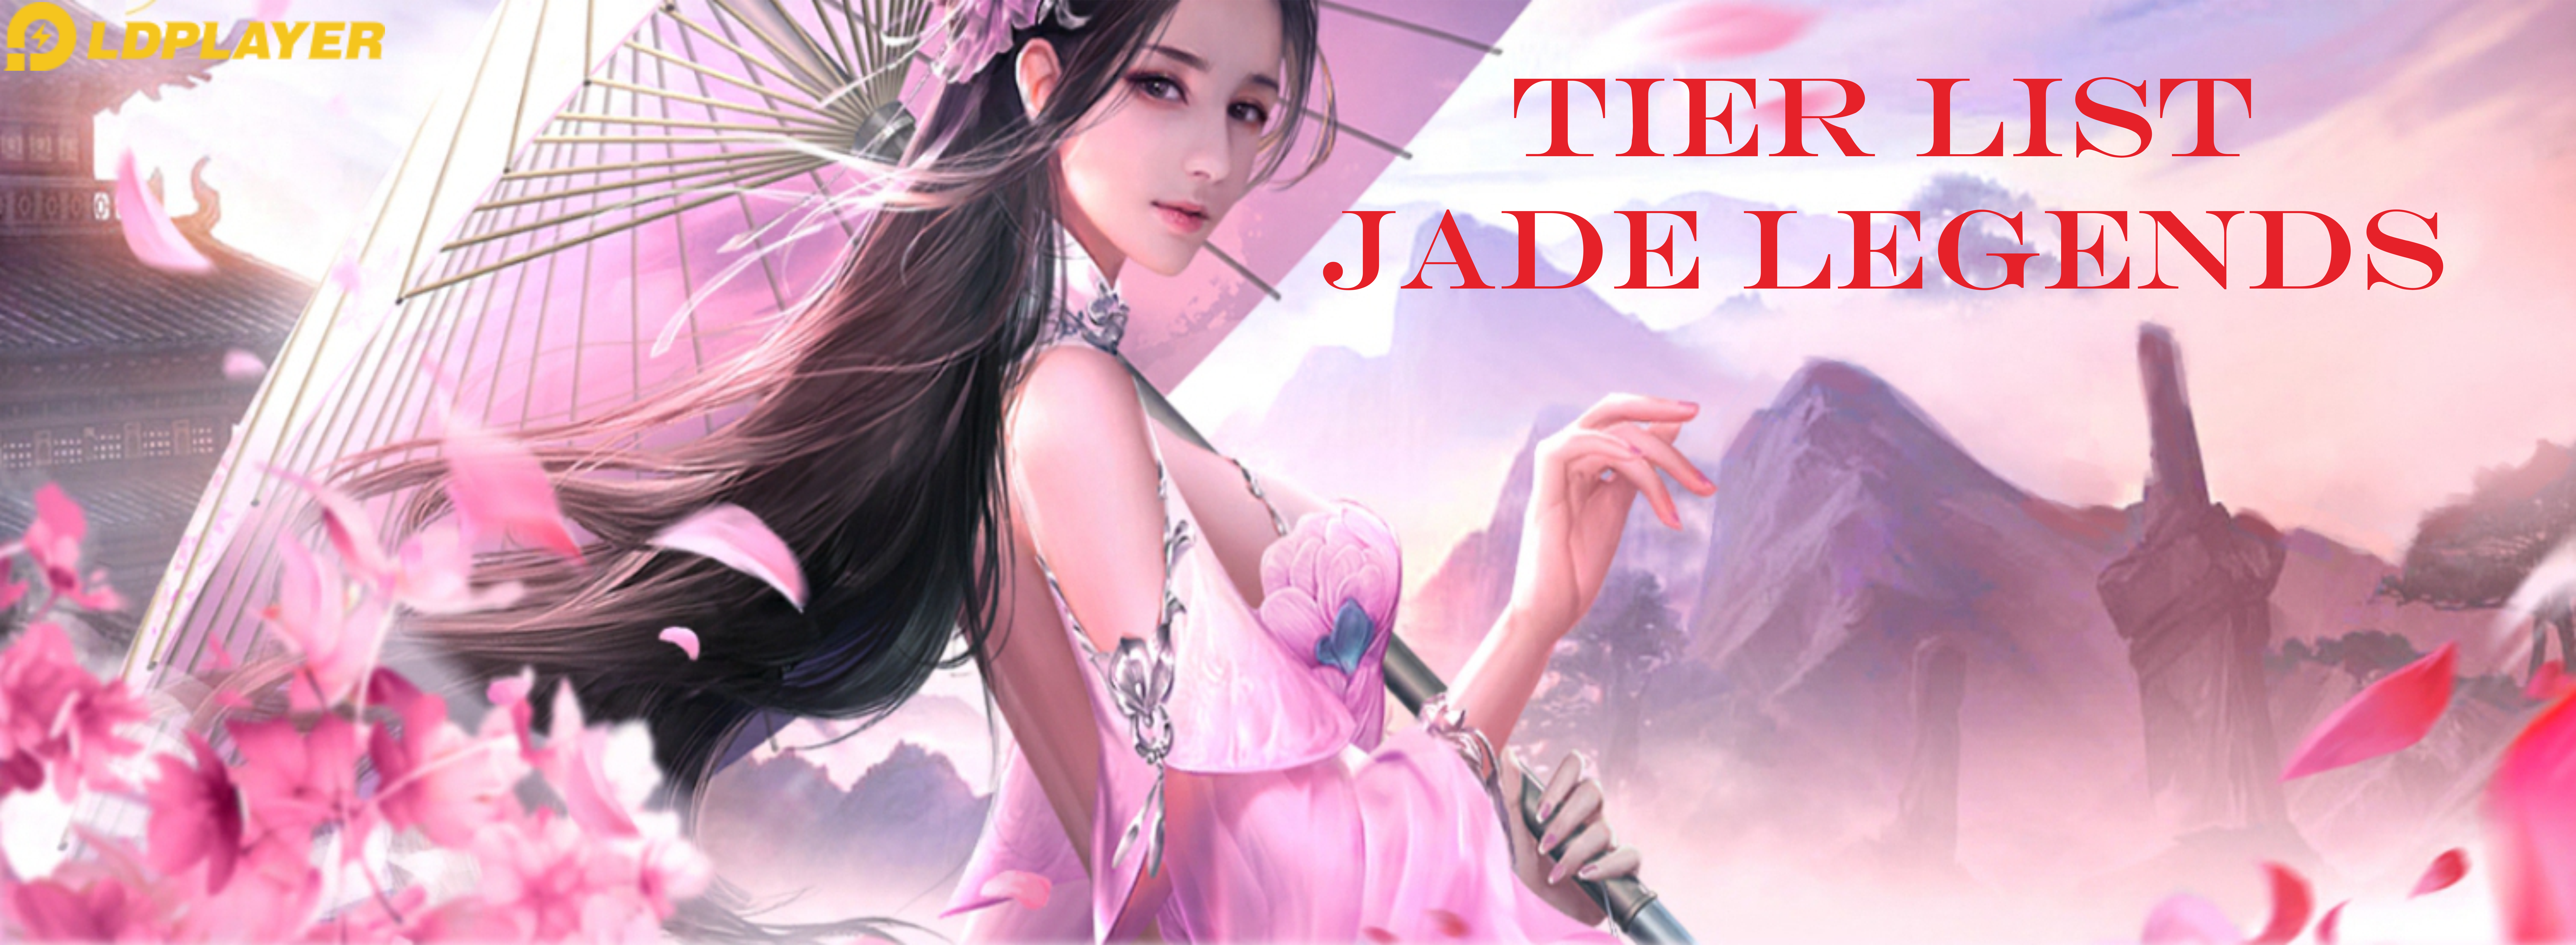 Hero Jade Legends - Cobain Semua Karakternya dengan LDPlayer 9!